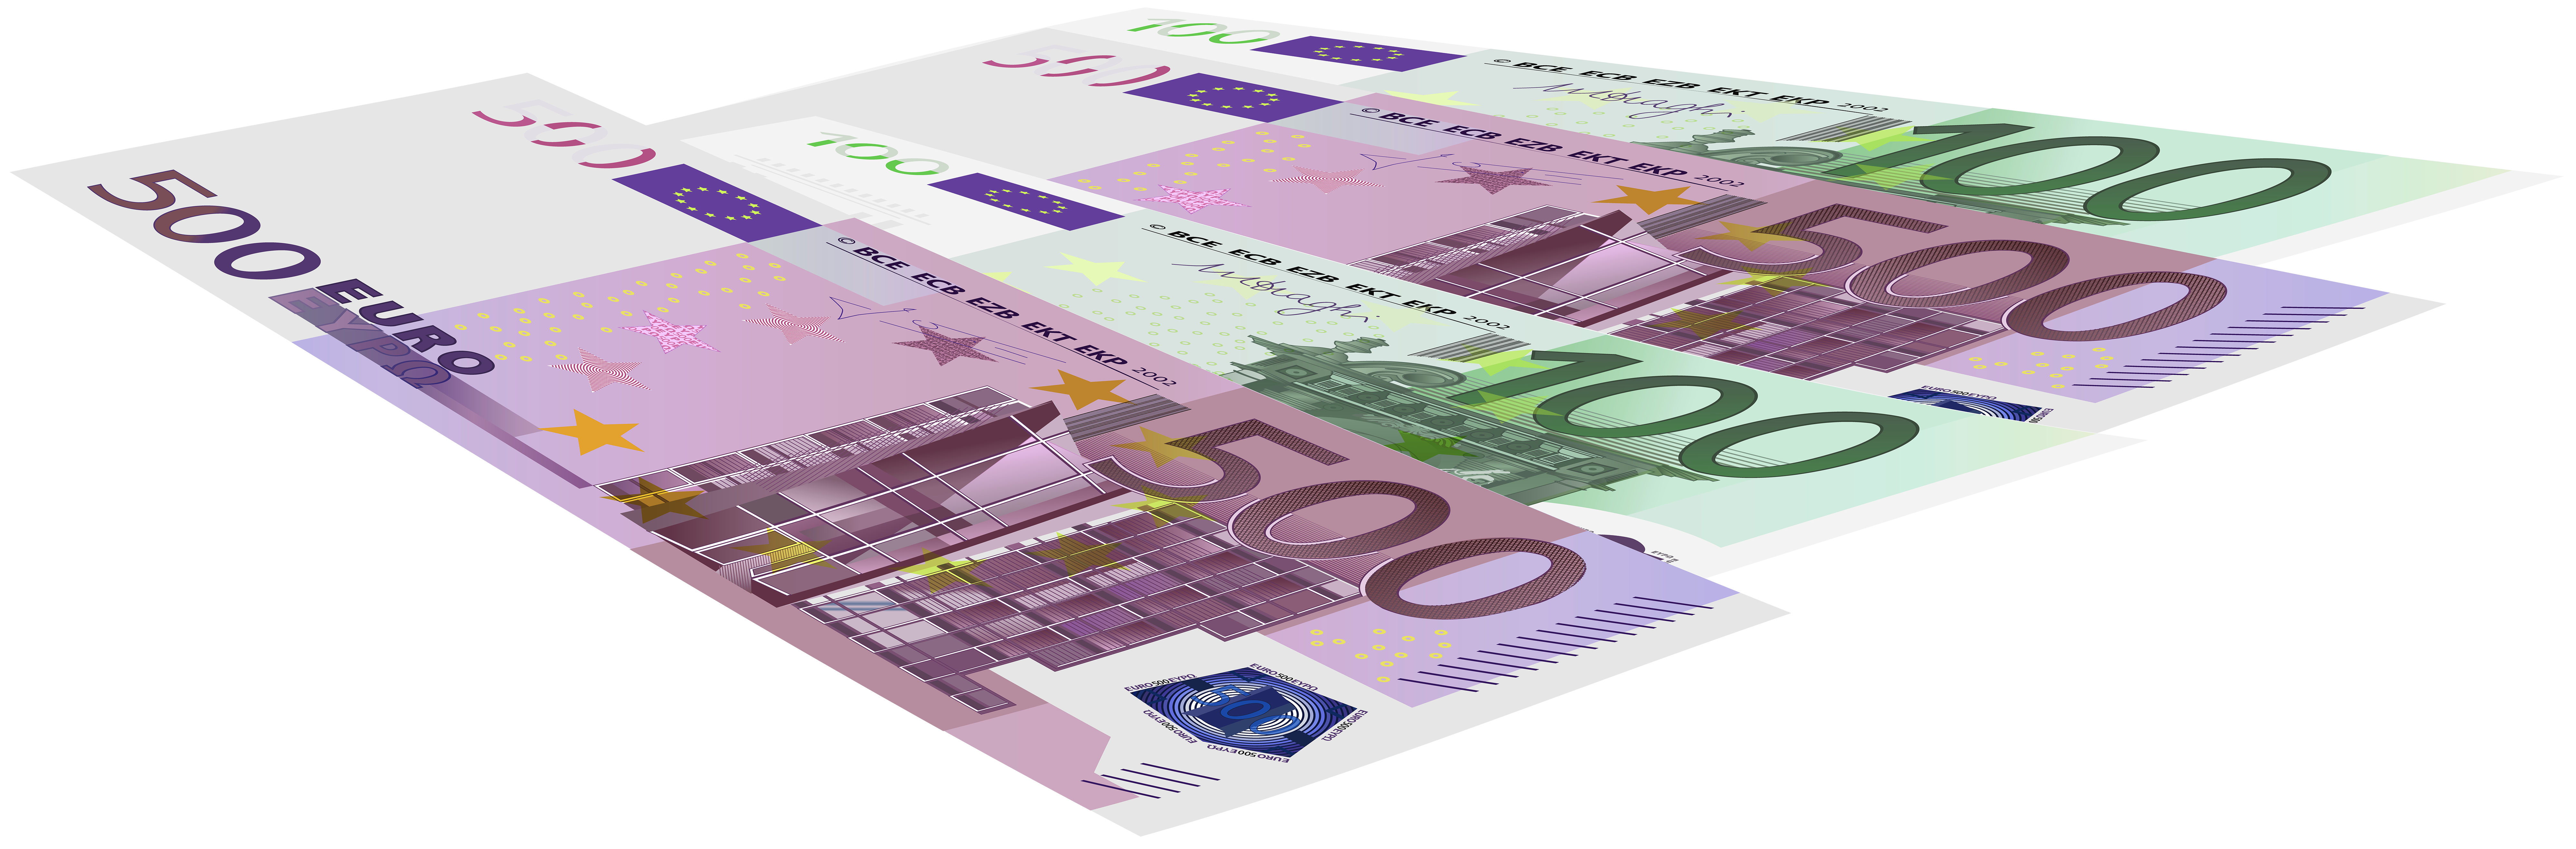 Euro Banknotes PNG Clip Art Image.